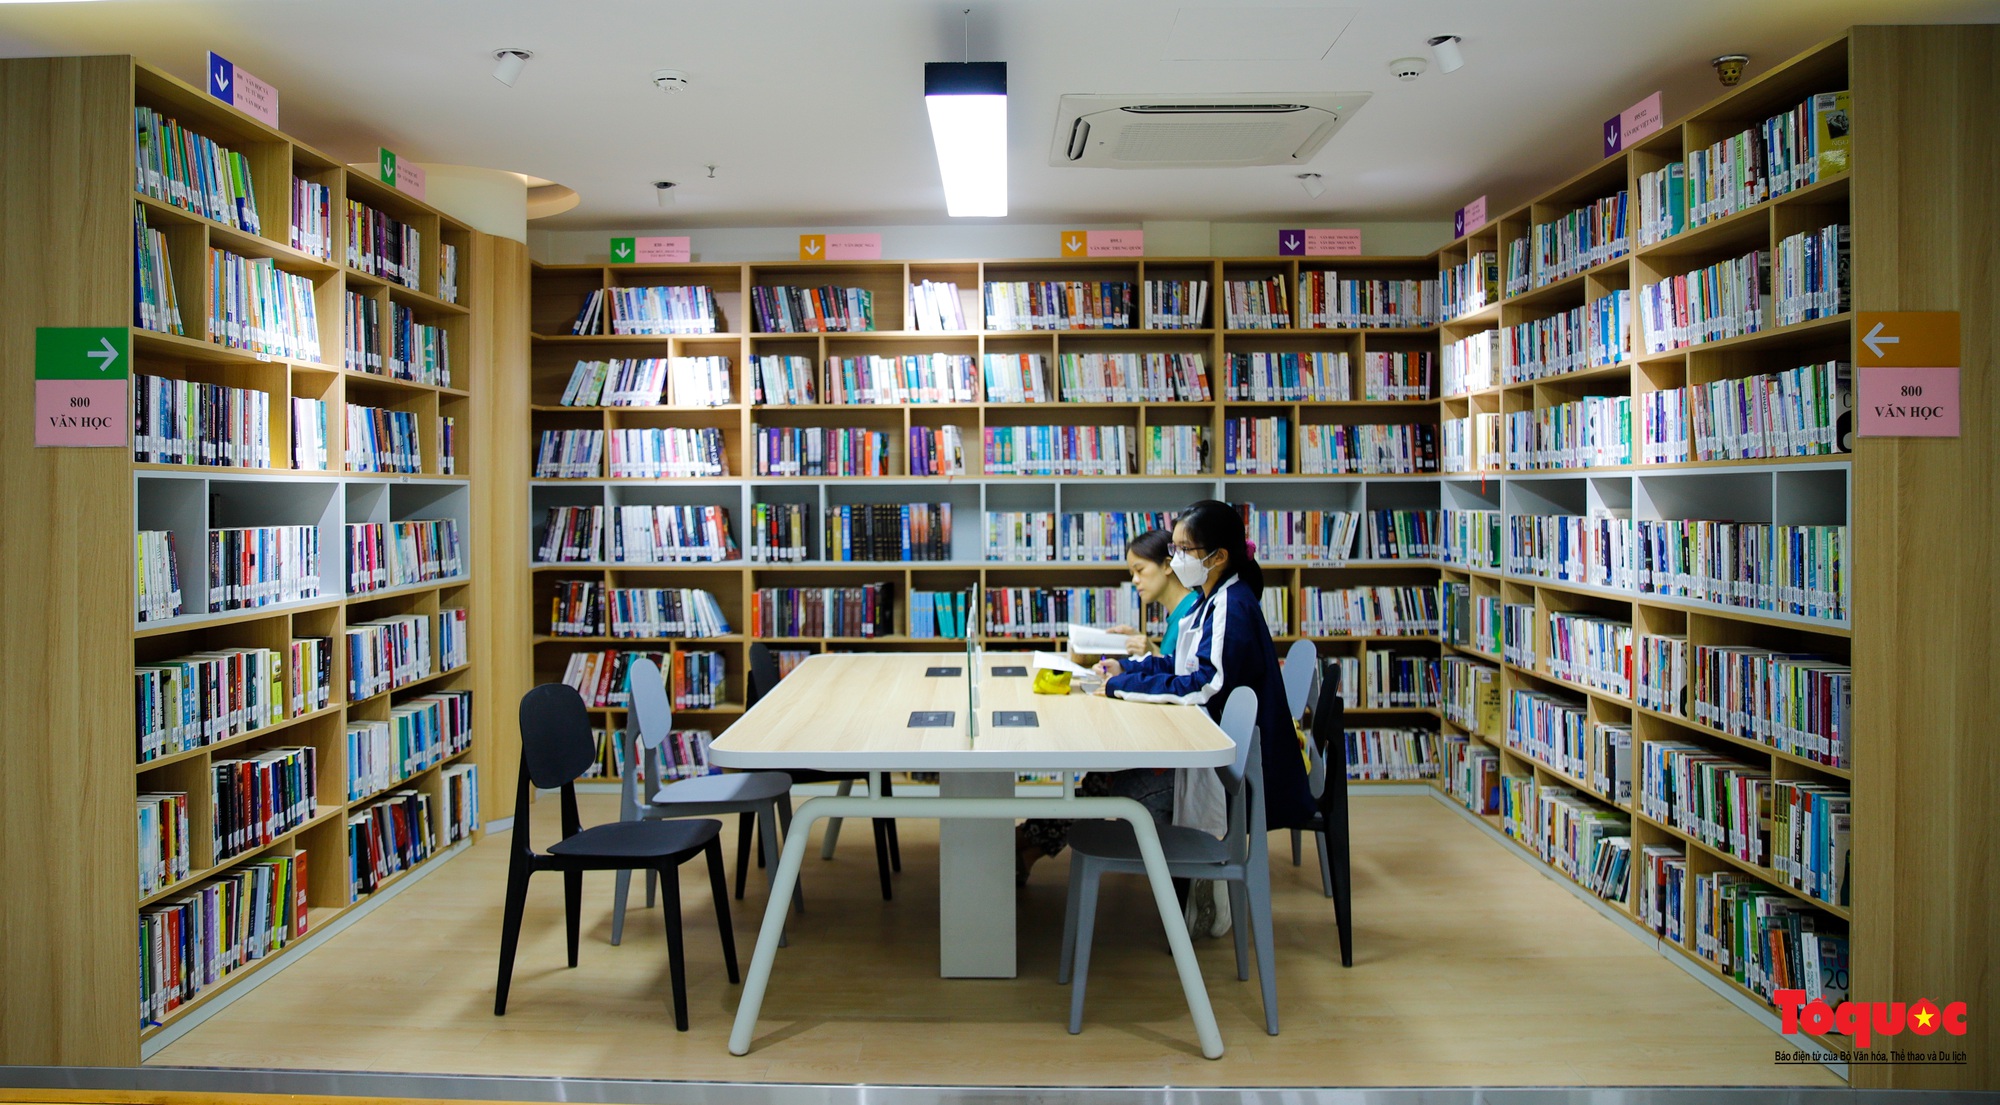 Khánh thành dự án “Tái tạo thư viện công cộng” tại Thư viện Hà Nội - Ảnh 14.